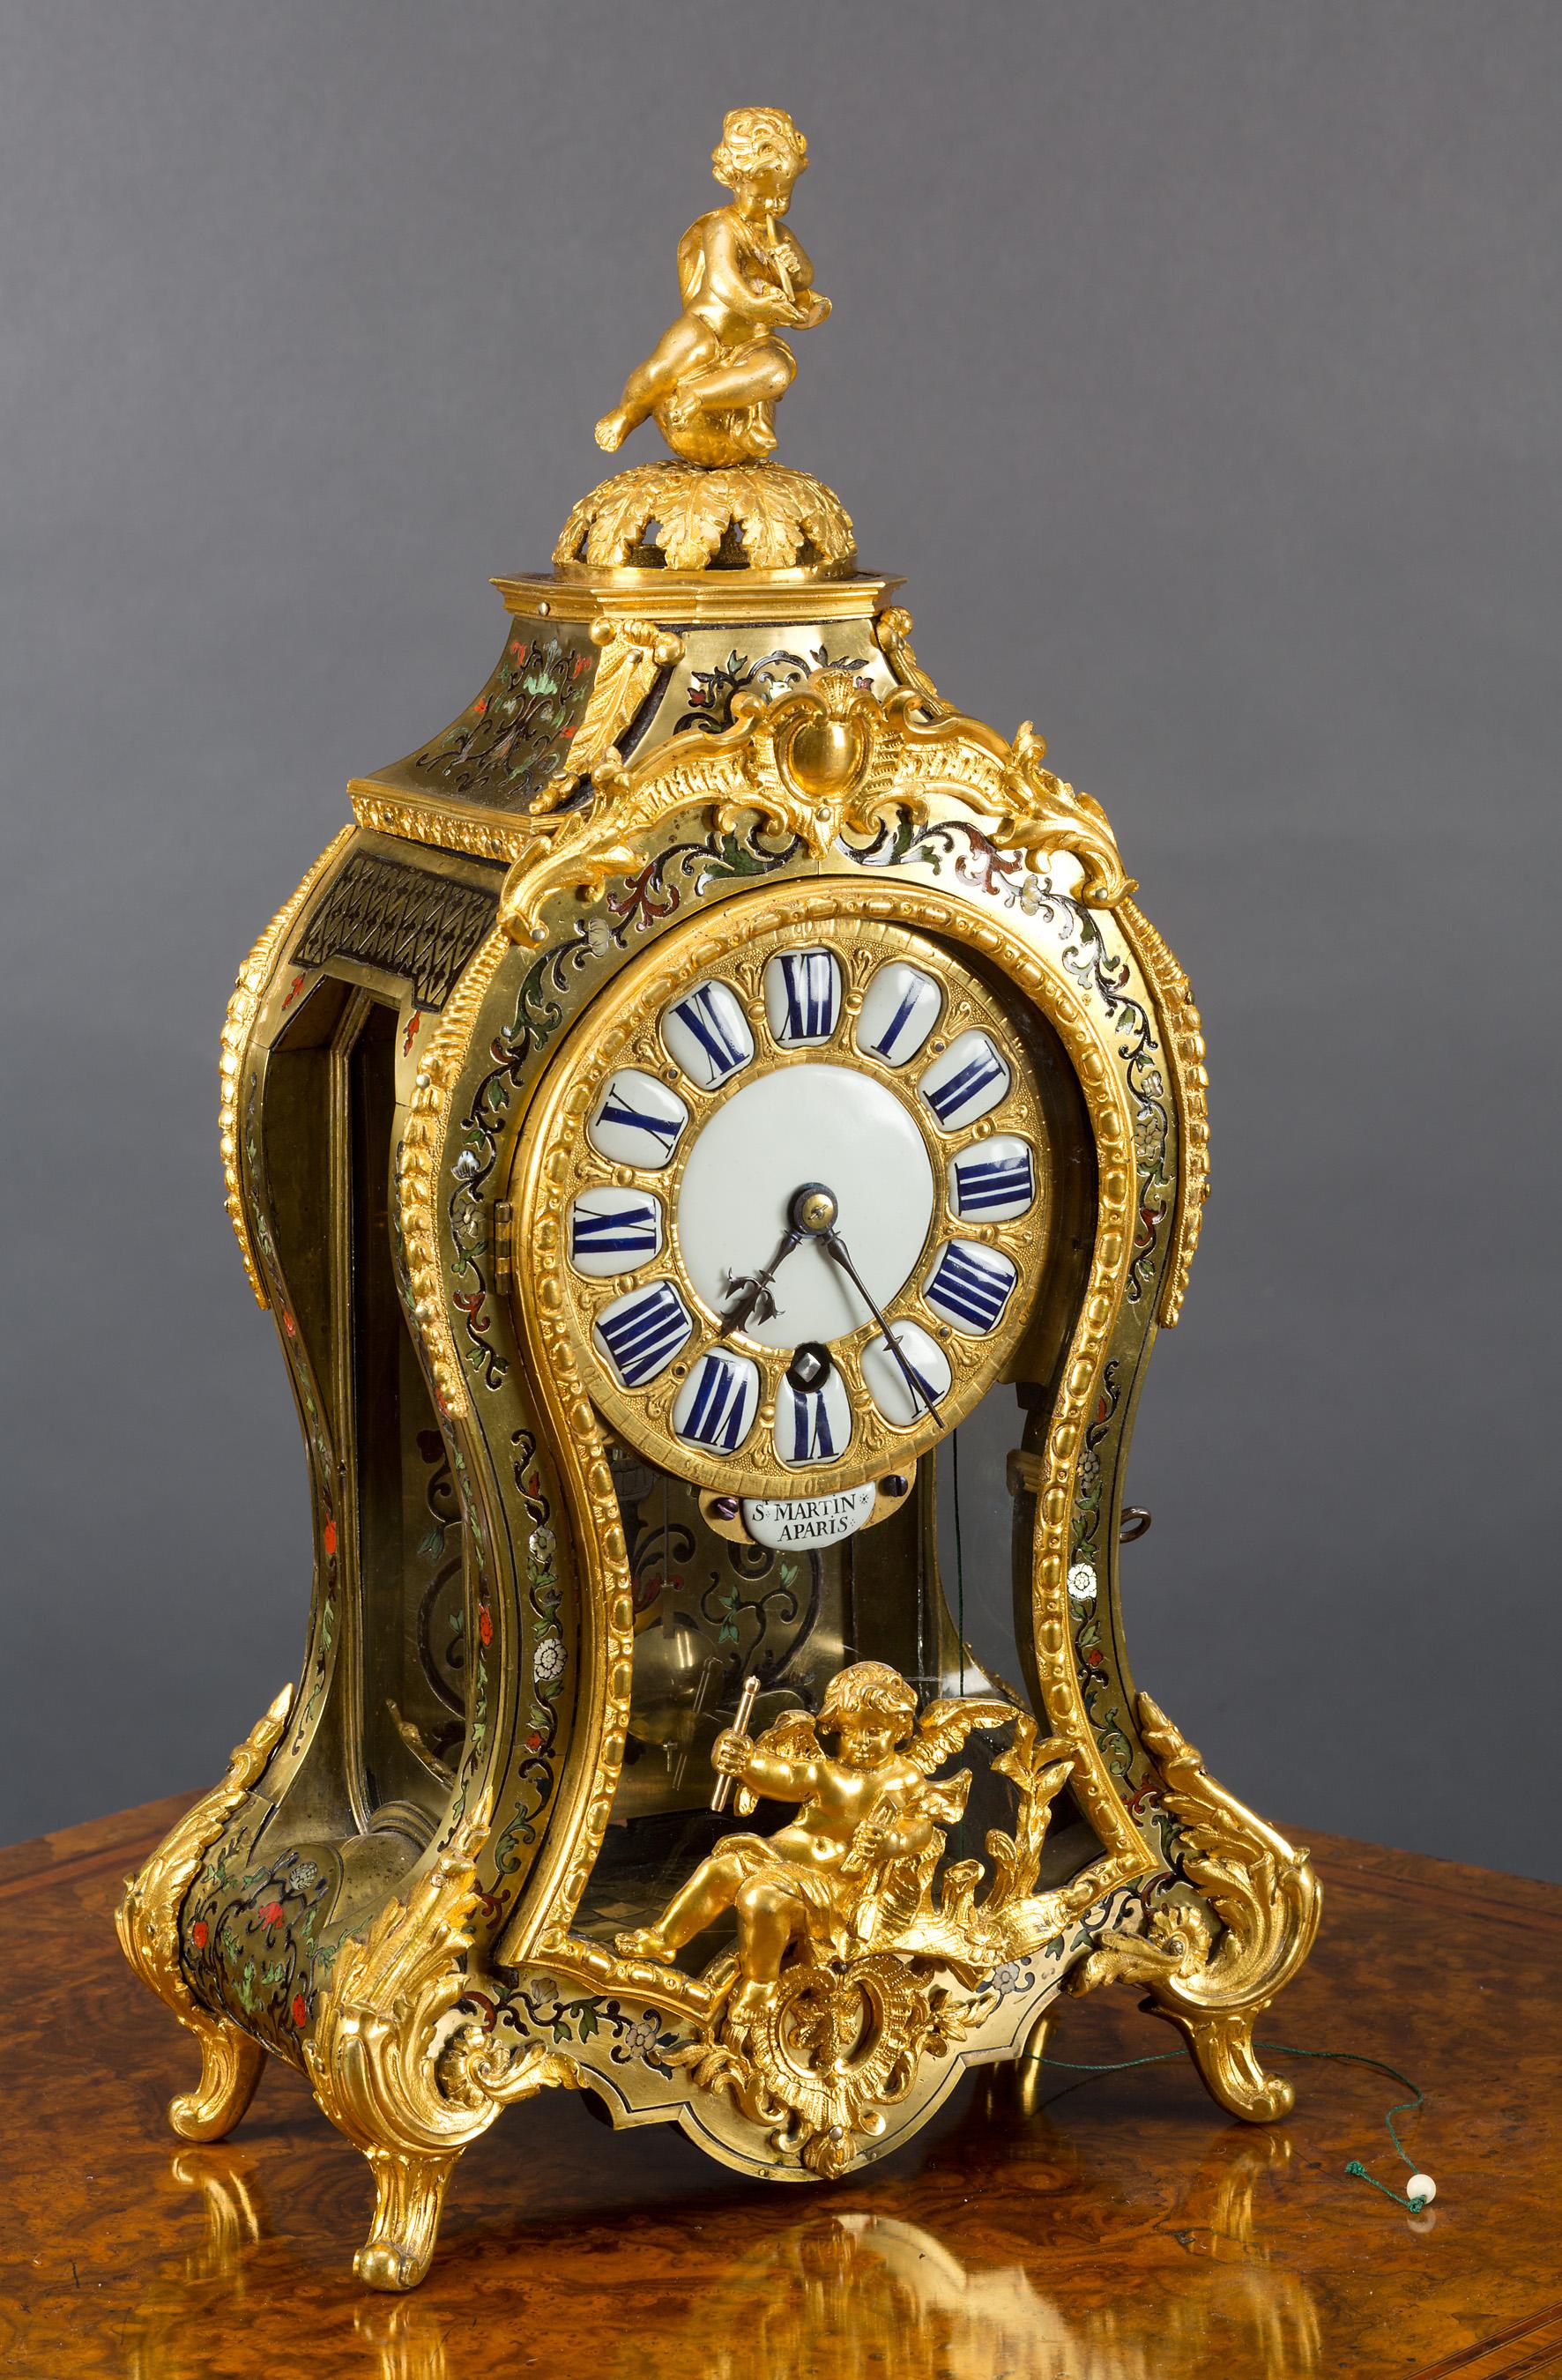 Louis XV-Schildpatt Boulle-Uhr mit 'Silent'-Zug-Viertelrepetition von St. Martin, Paris, um 1720

Tailliertes Gehäuse mit feinen Ormolu-Beschlägen und geschliffenen Messingeinlagen auf gebeiztem Schildpatt mit Perlmutt- und farbigem Blumendekor.